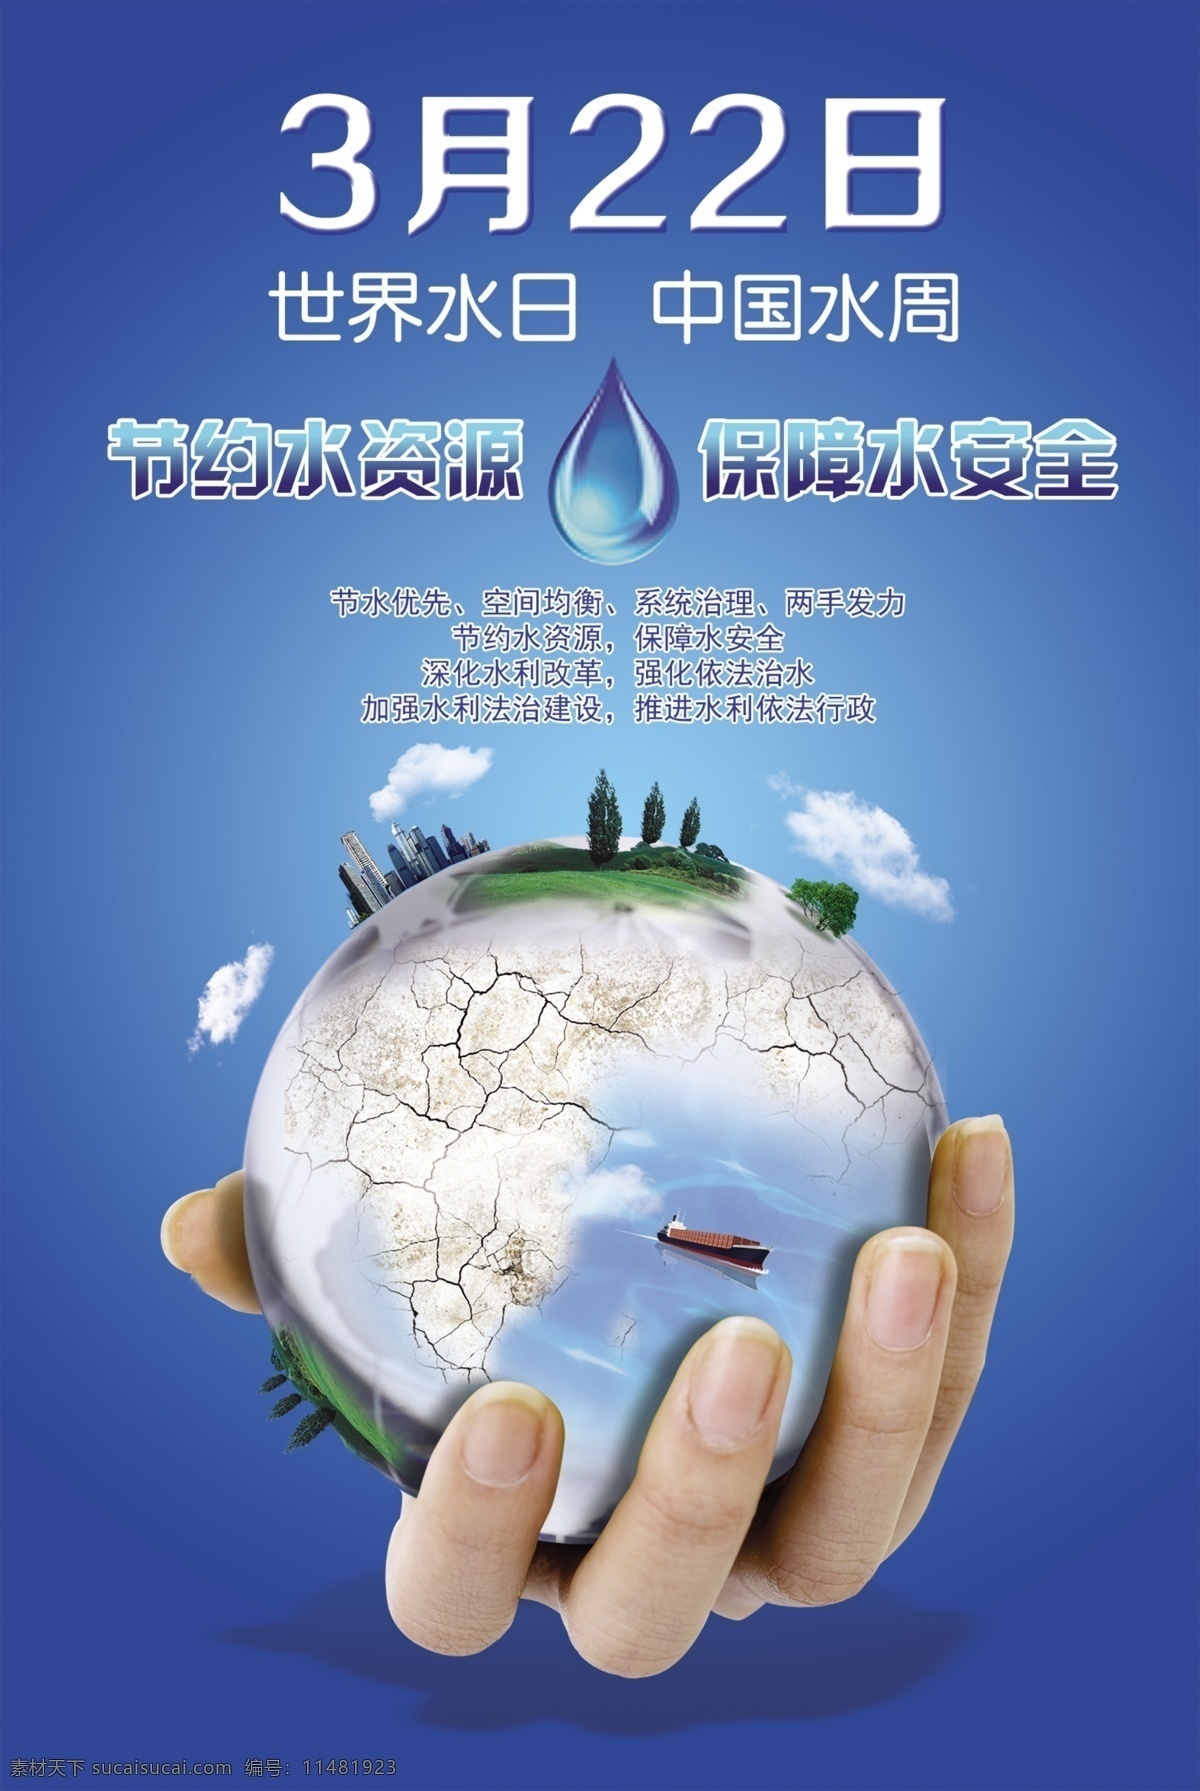 世界水日 中国水周 节约用水 绿色环保 低碳生活